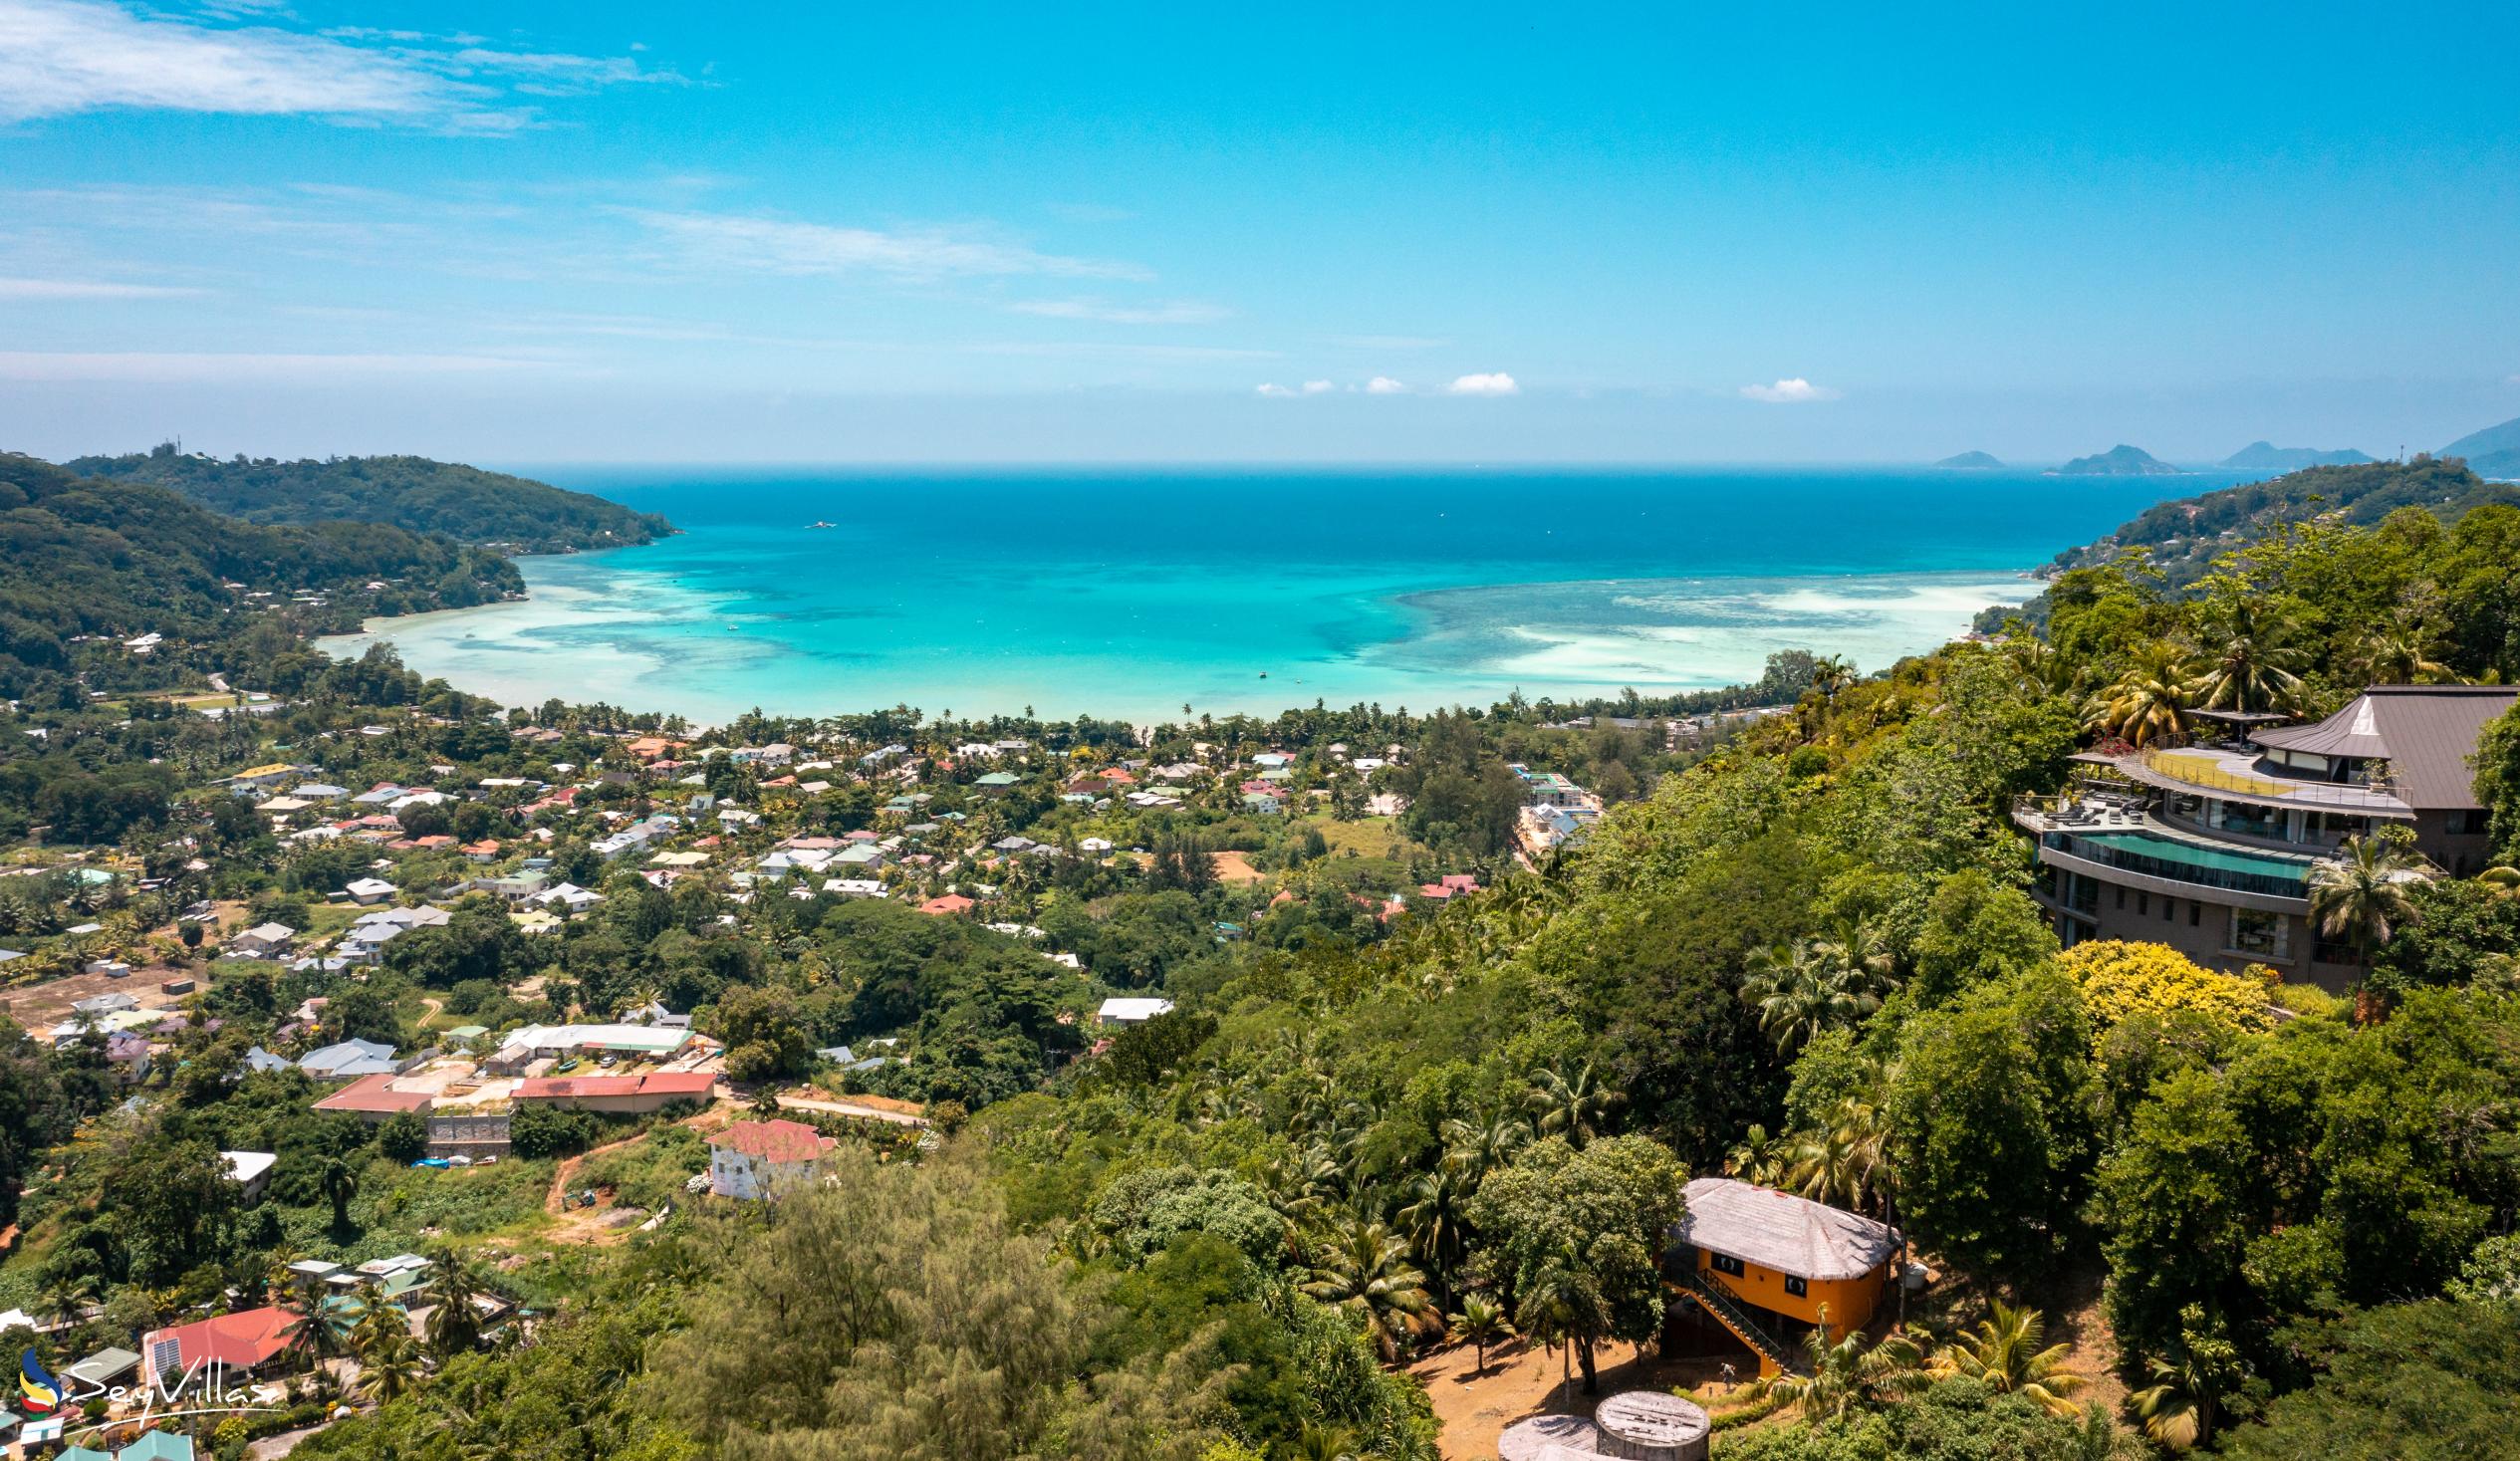 Foto 27: Residence Monte Cristo - Posizione - Mahé (Seychelles)